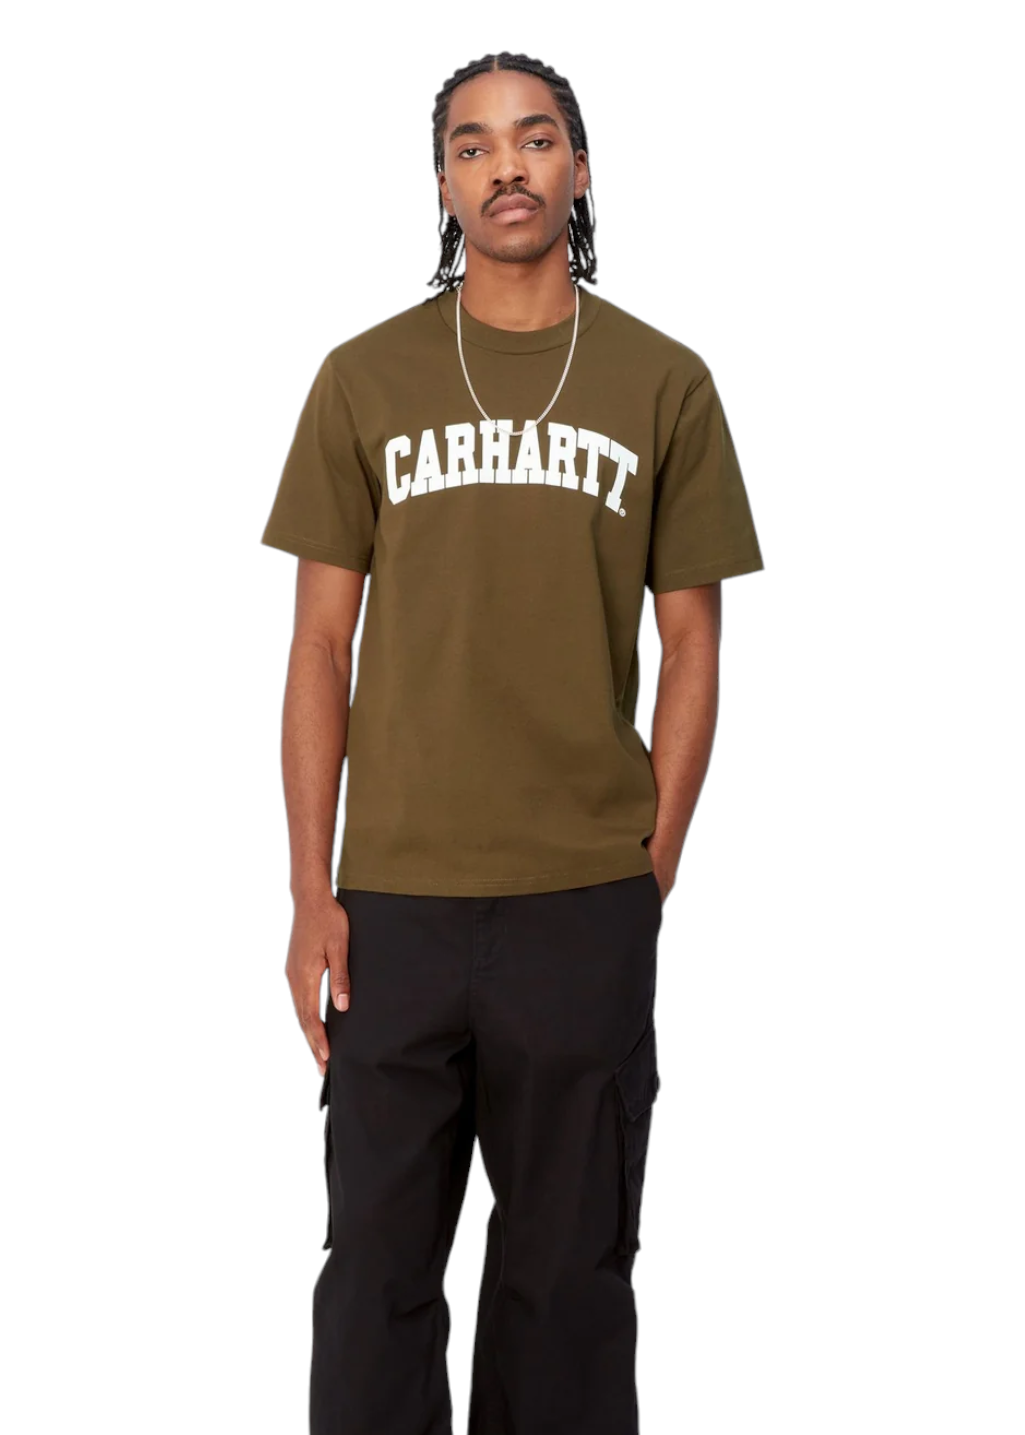 Carhartt WIP - S/S University T-Shirt - Lumber/White - Hardpressed Print Studio Inc.